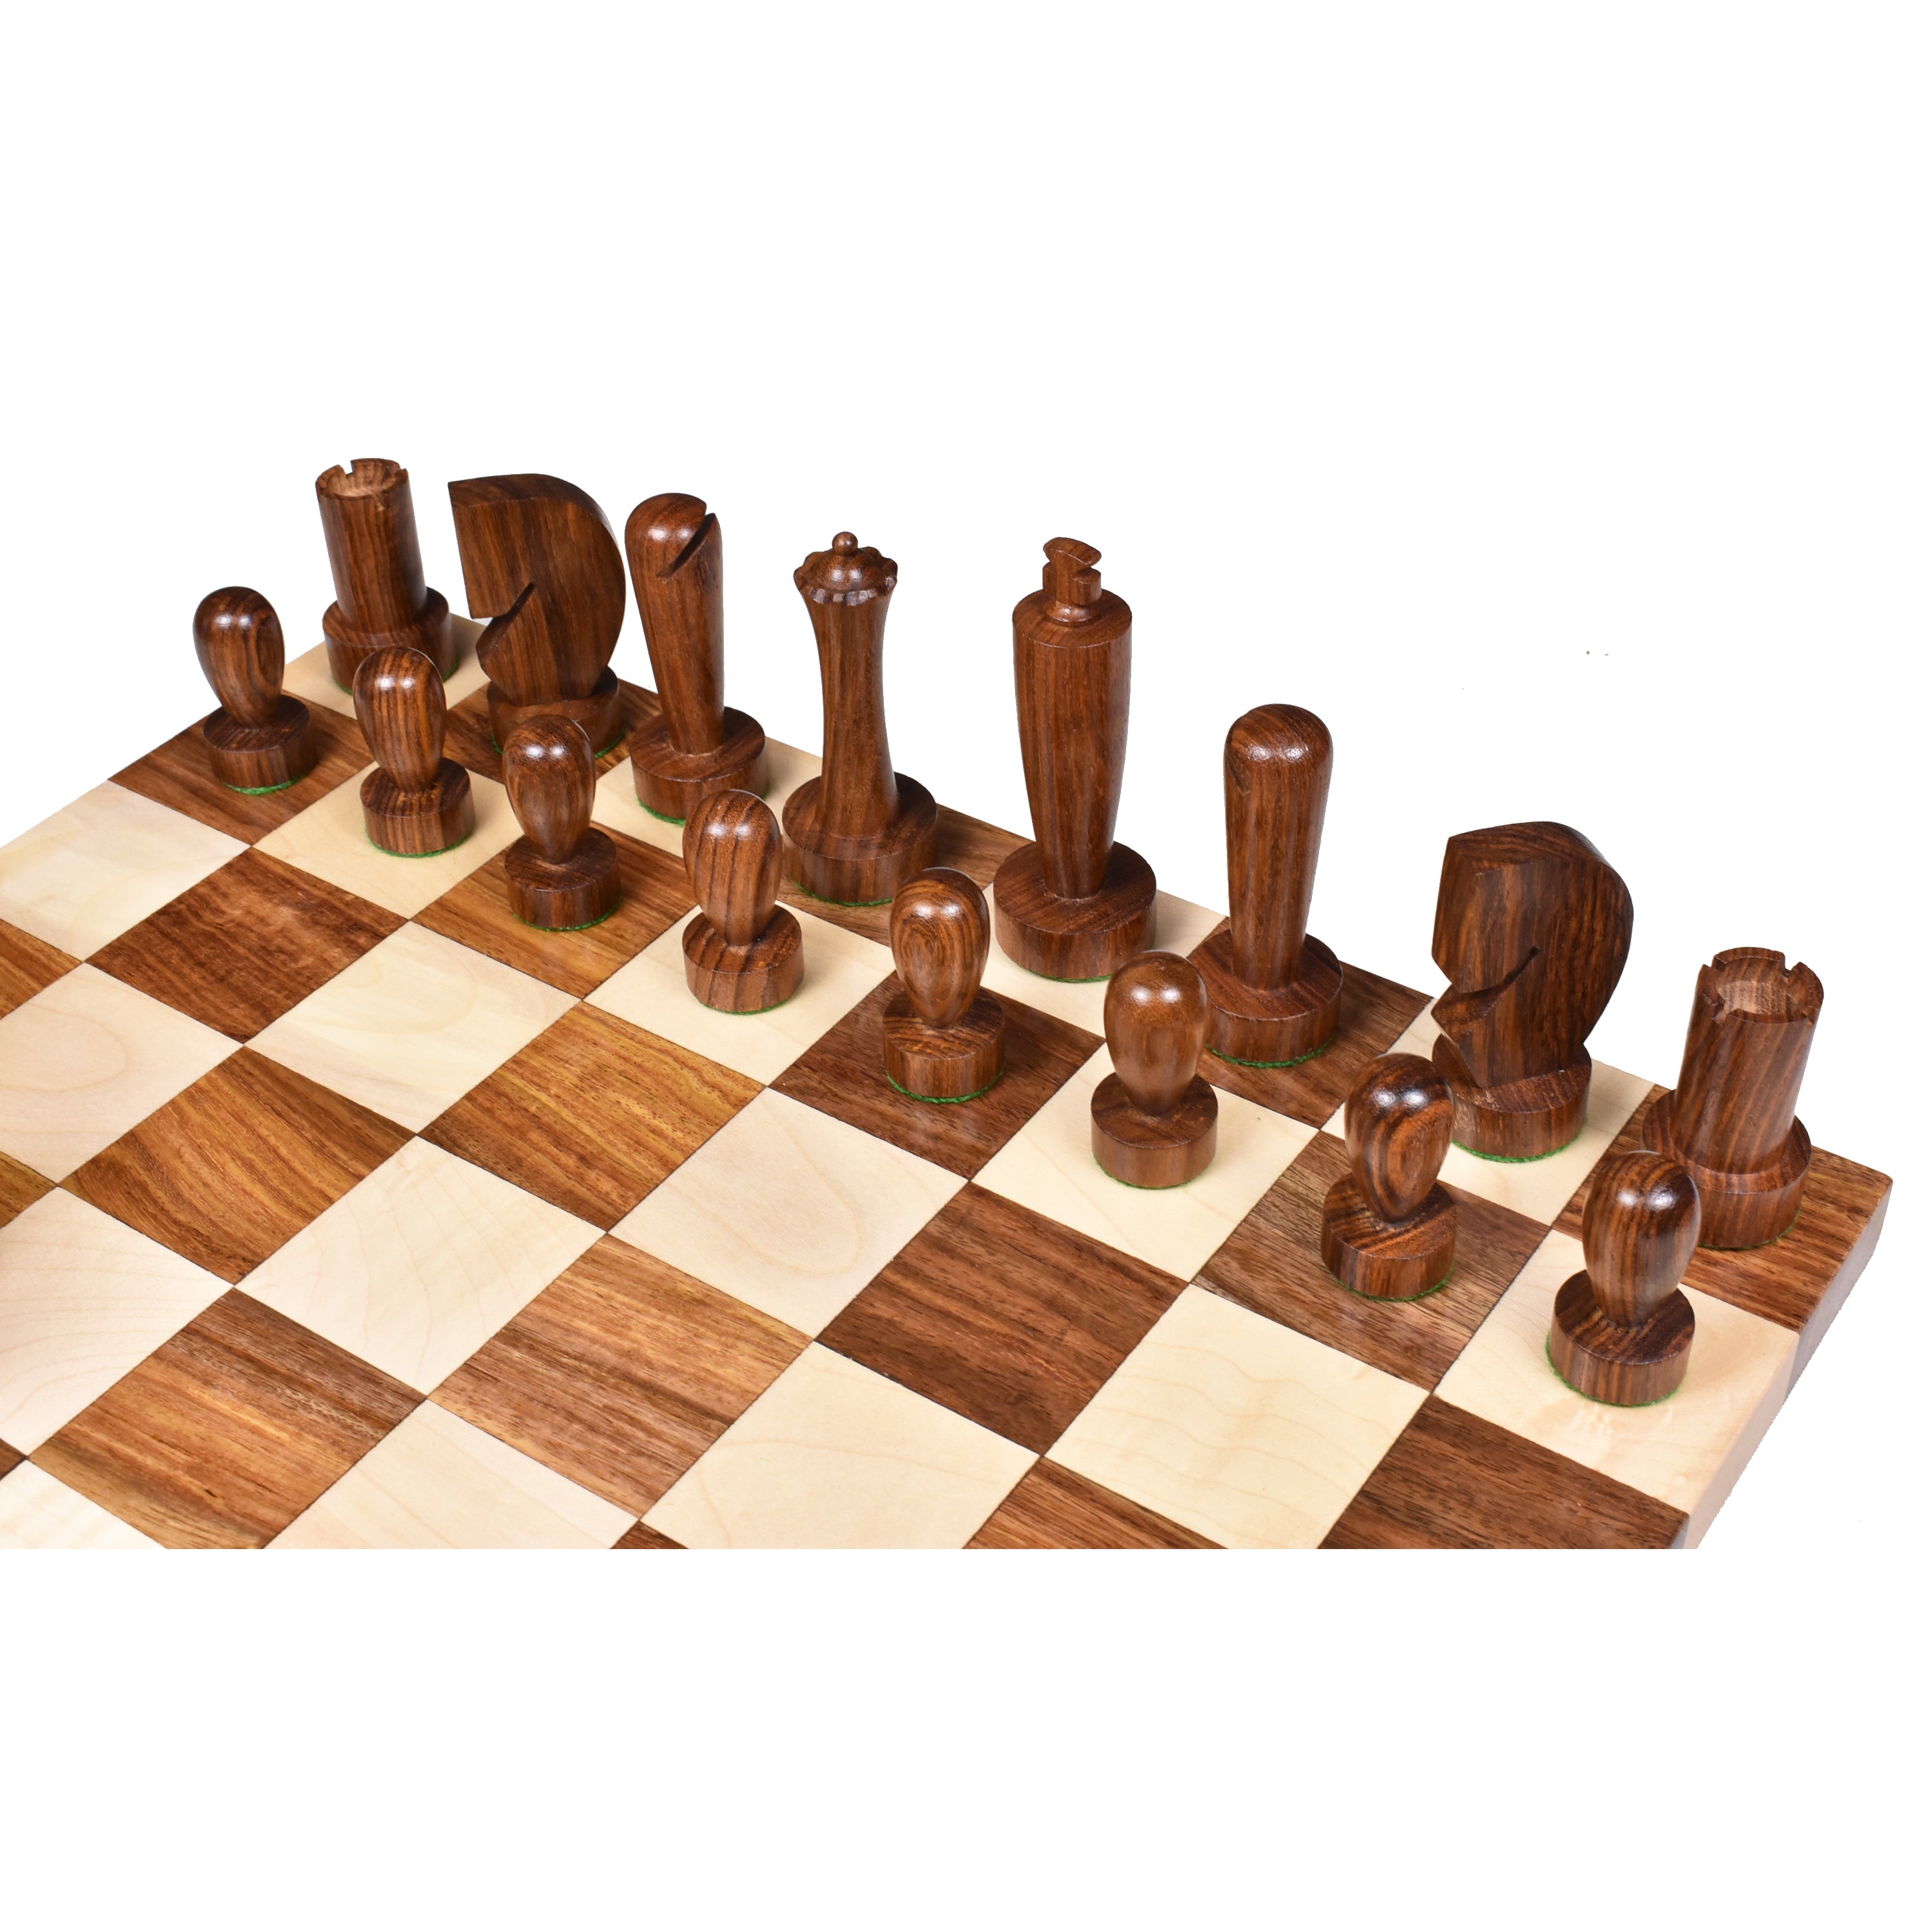 Luxus einzigartige Schachspiel zeitgenössische minimalist ische